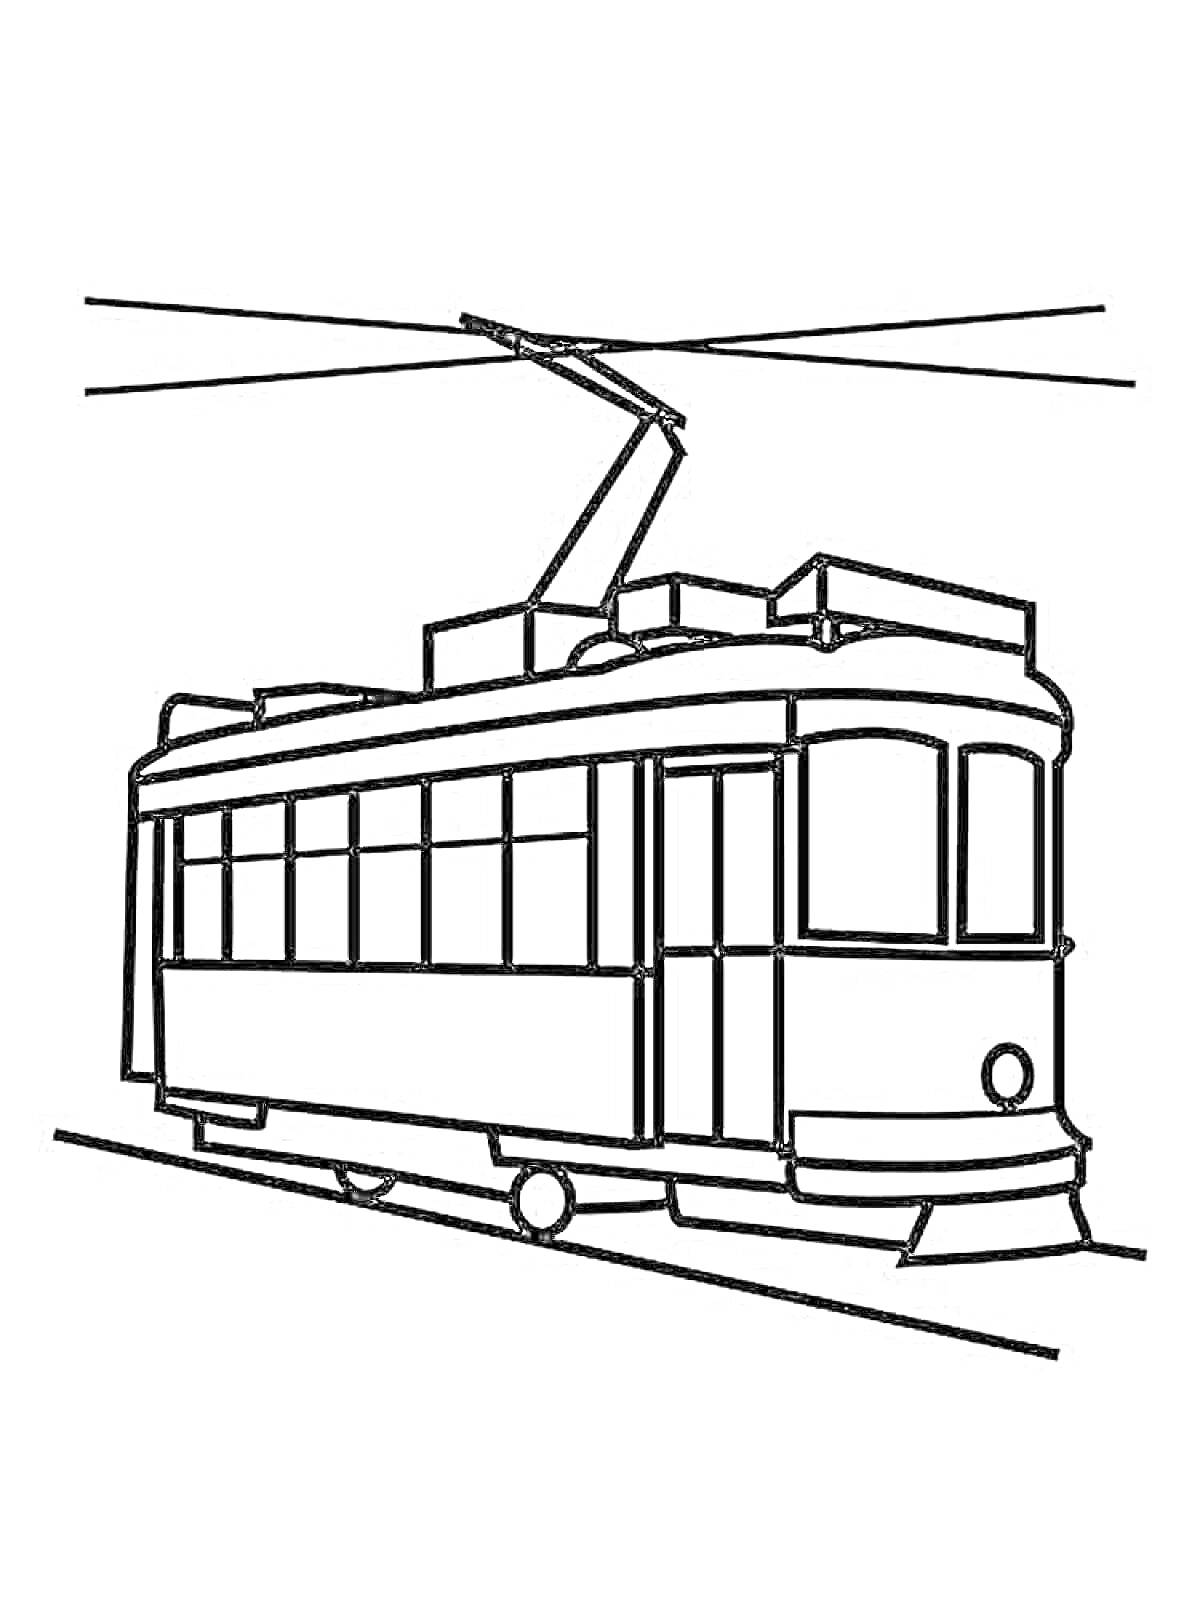 Раскраска Трамвай с боковым видом, контактными проводами и пантографом